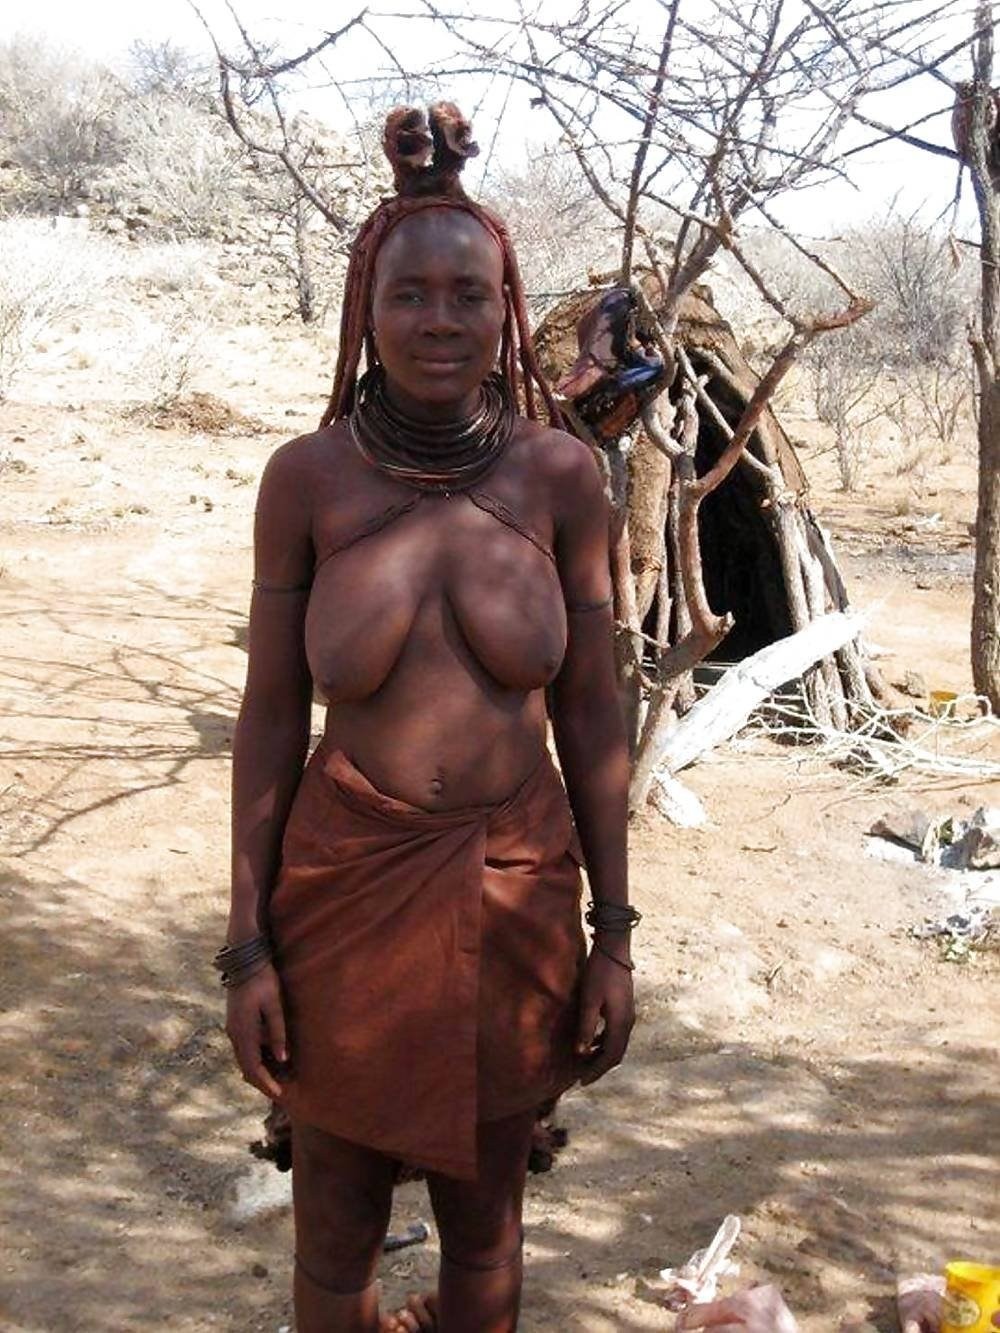 Женщины племени Химба в полный рост